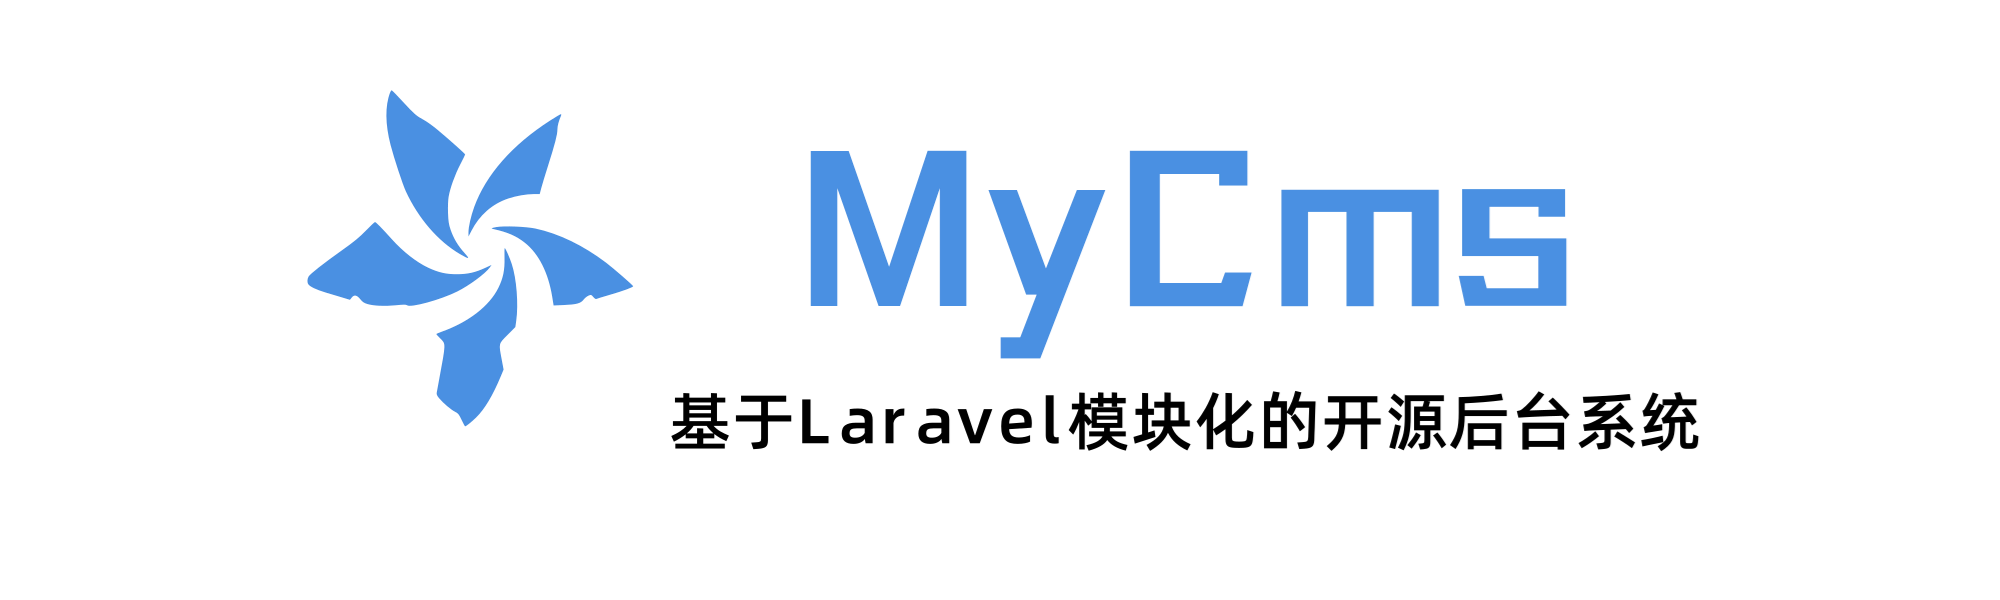 MyCms v1.7.0 开放 API，开源 Laravel 自媒体 CMS 系统